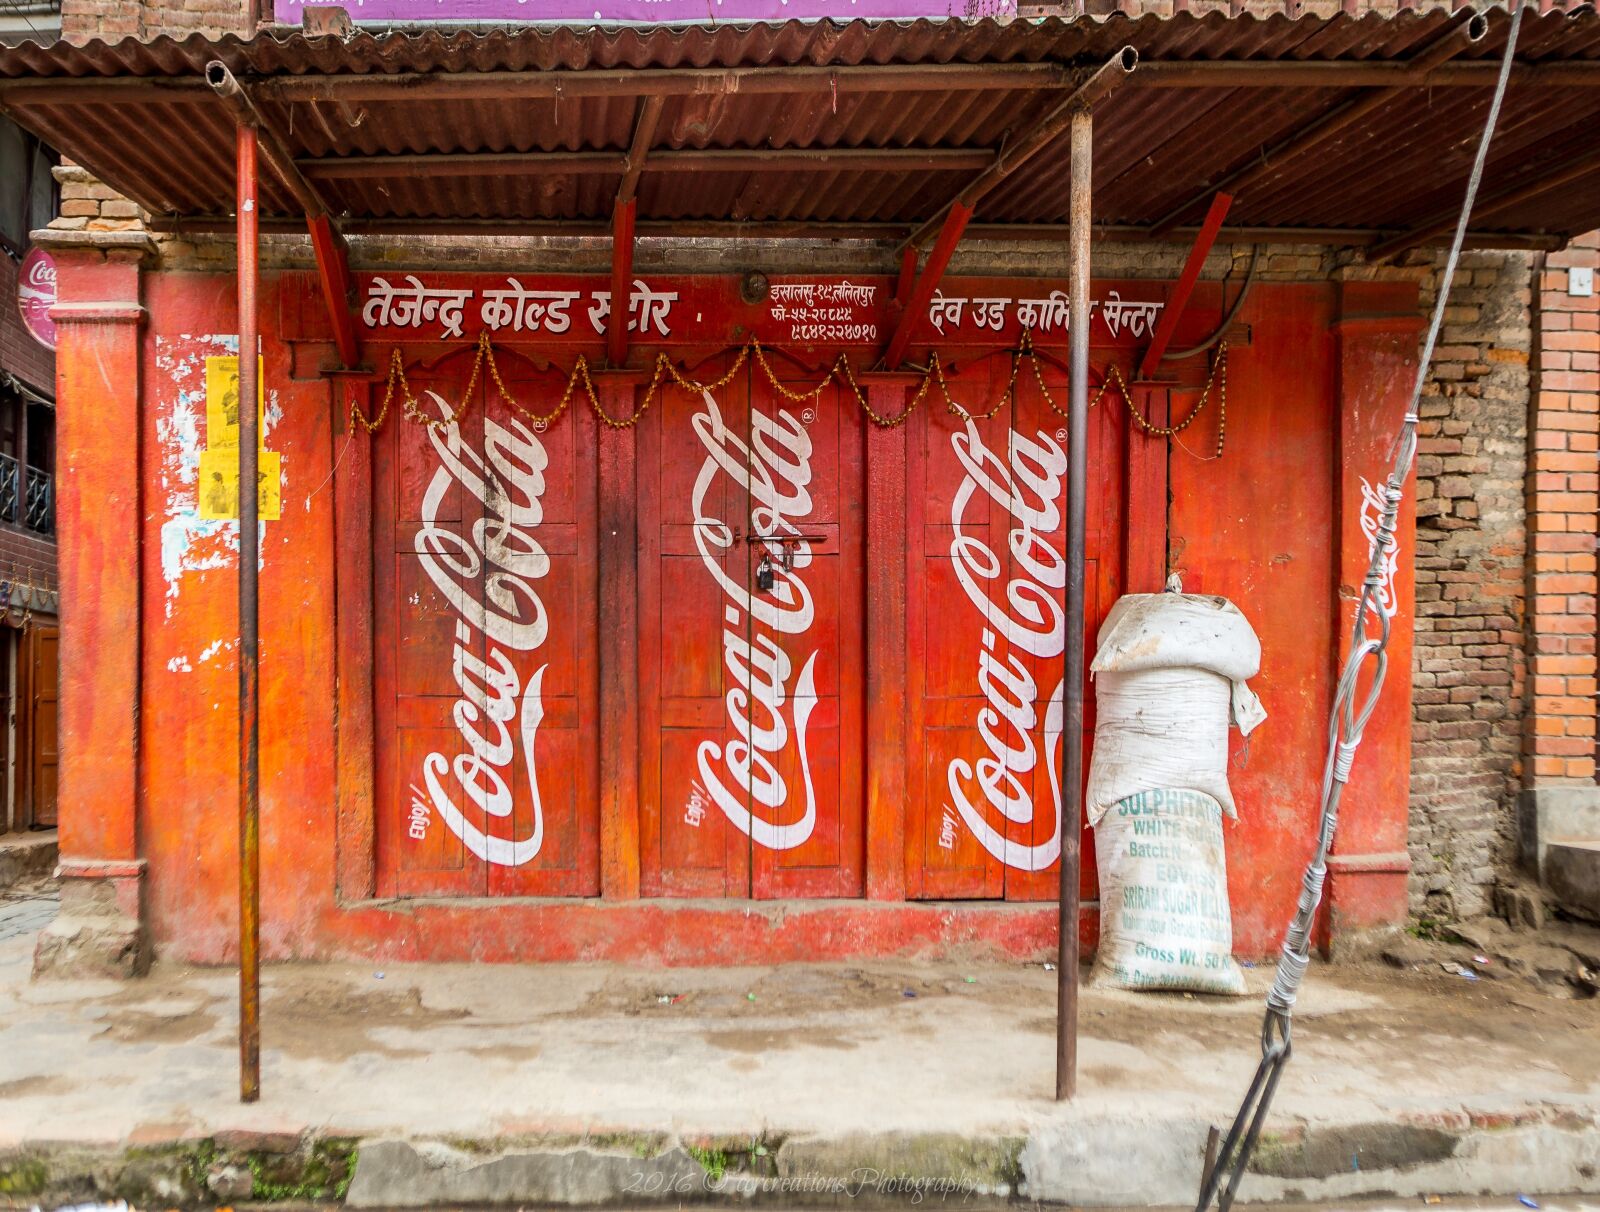 Canon EOS 6D + Canon EF 17-35mm f/2.8L sample photo. Nepal, coke, coca-cola photography